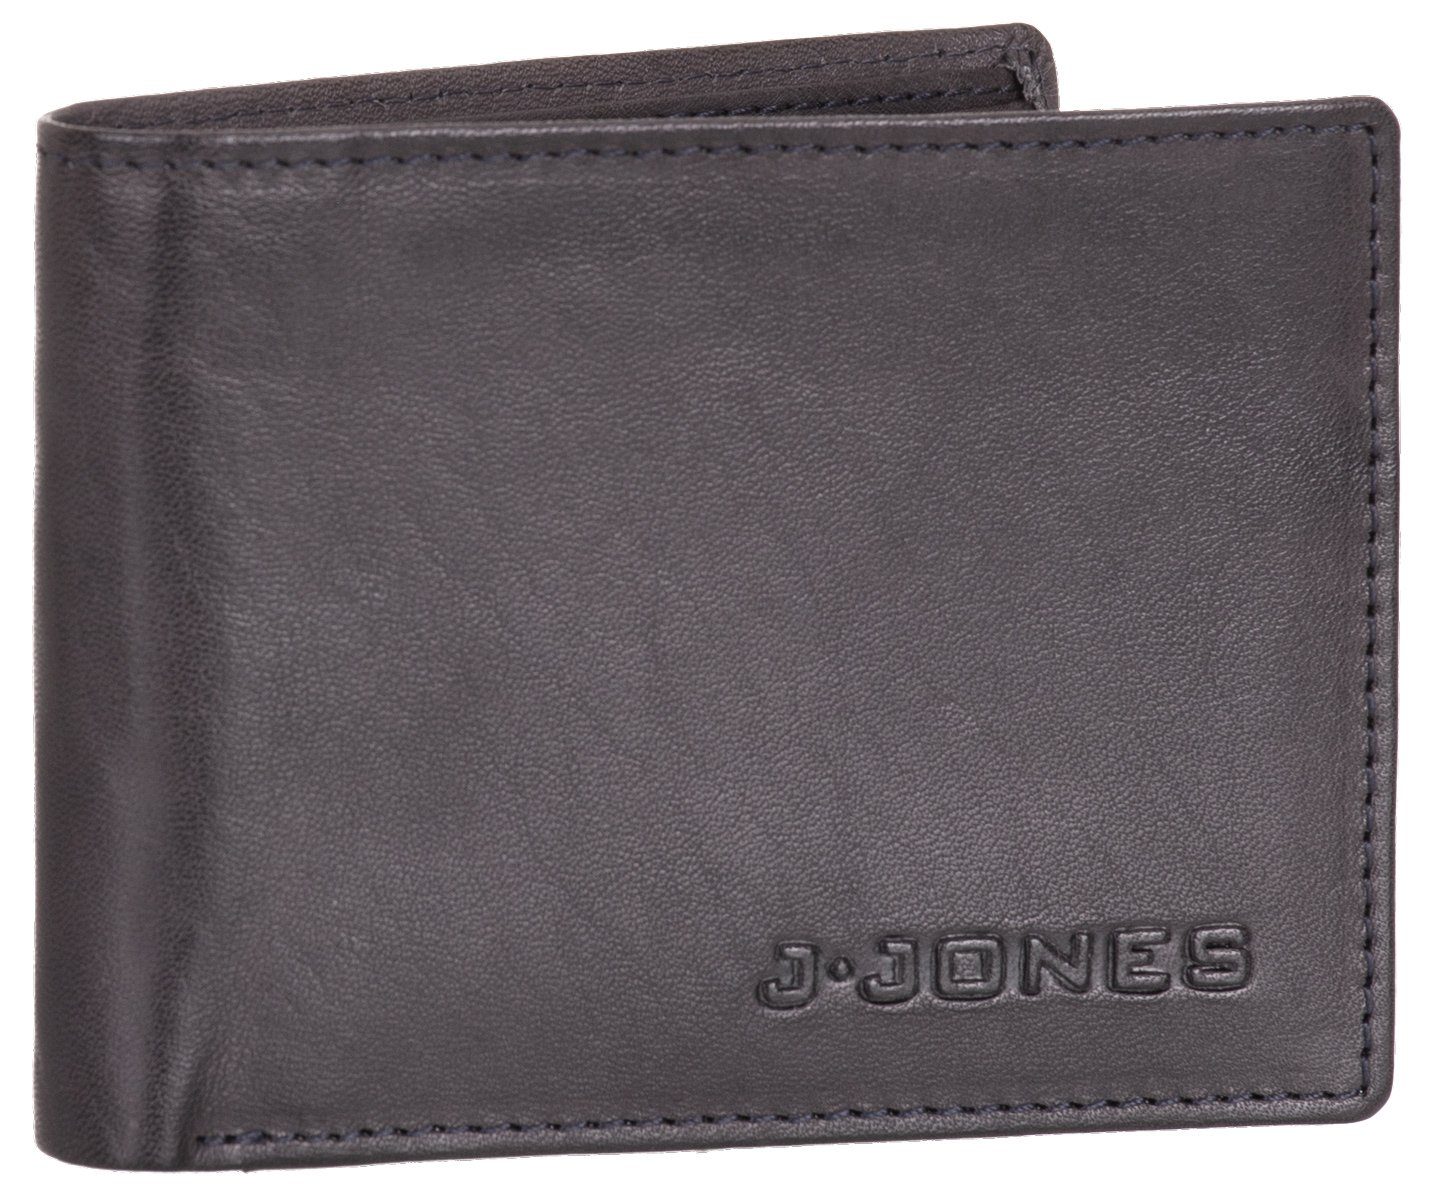 J.Jones Geldbörse, Geldbörse flach und faltbar Echt Leder RFID-Schutz Münzfach Portemonnaie Geldbeutel anthrazit